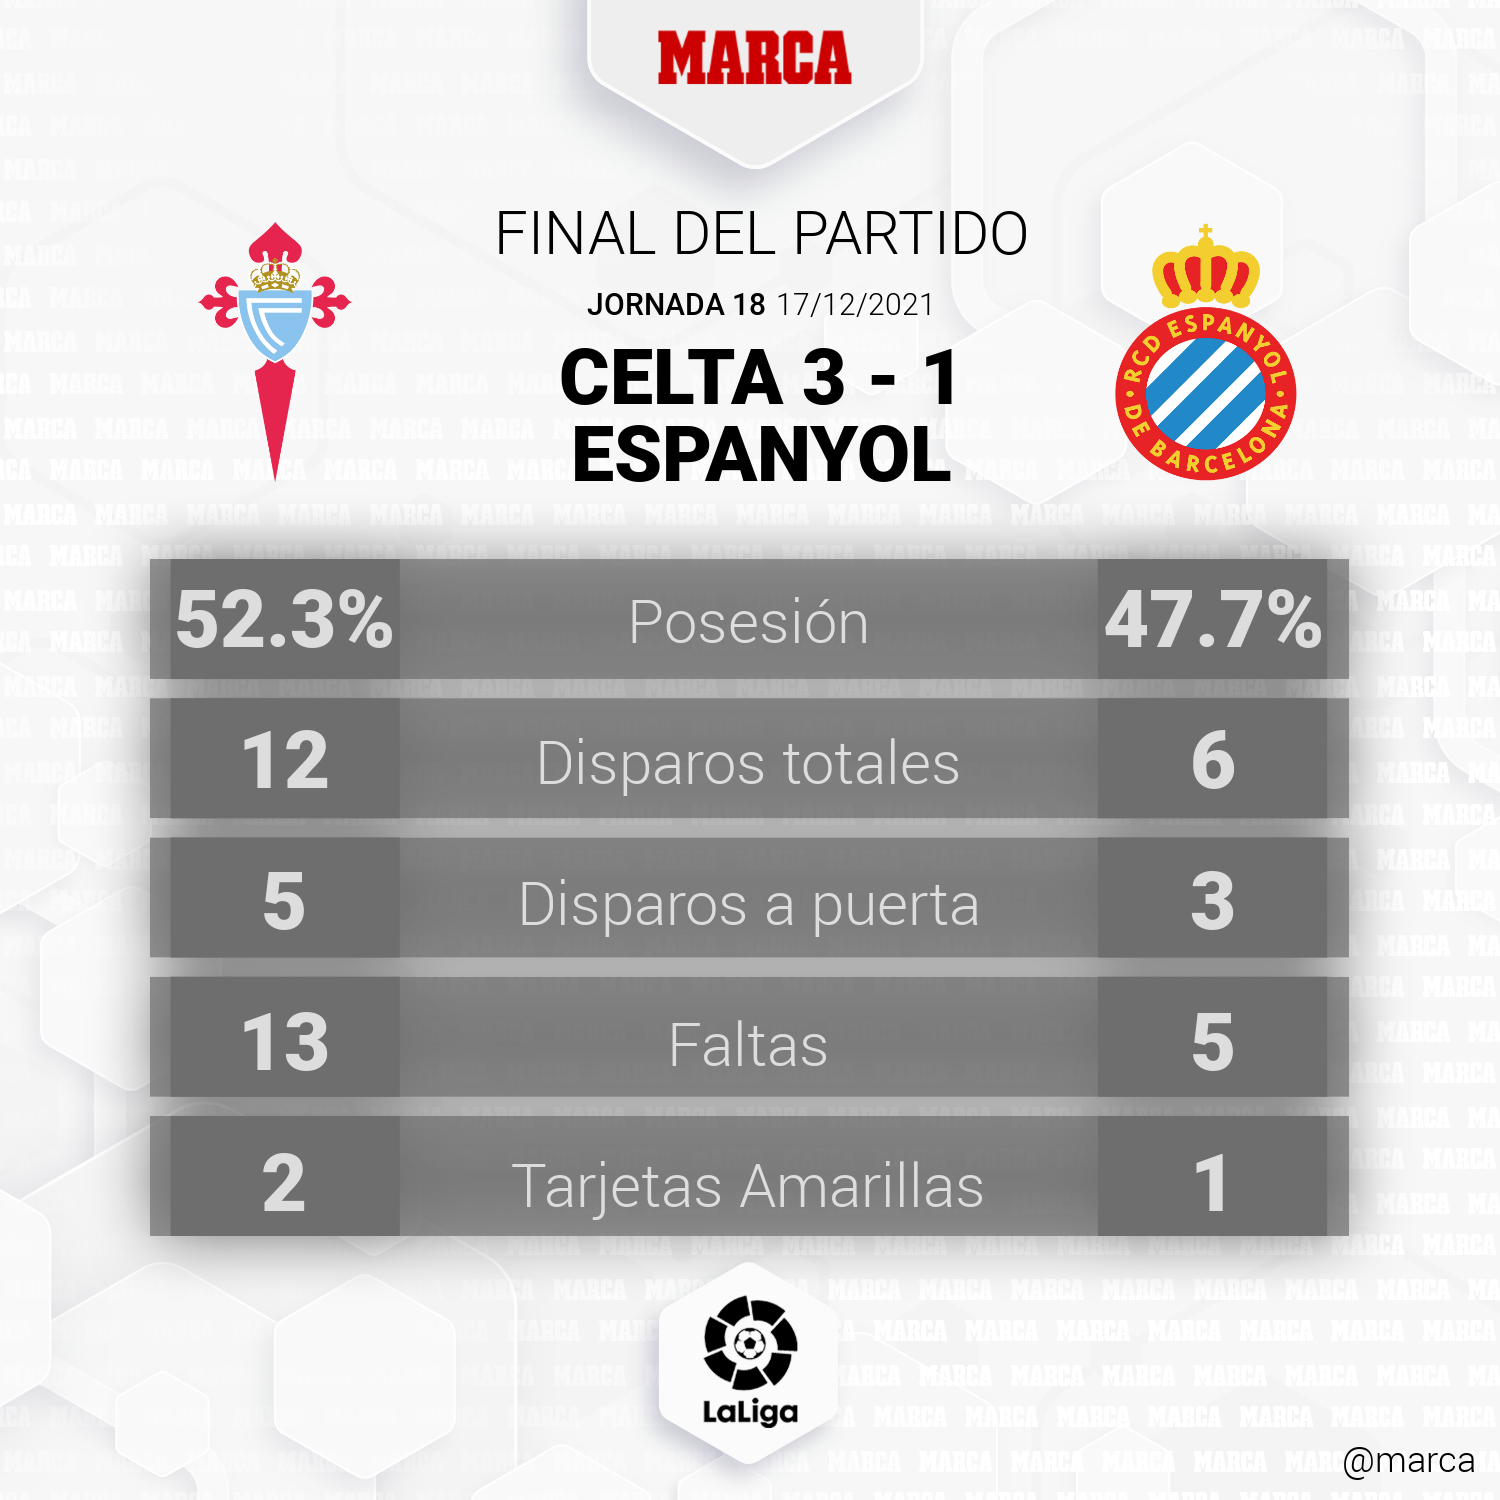 ¿Cuántos partidos ha ganado el Espanyol